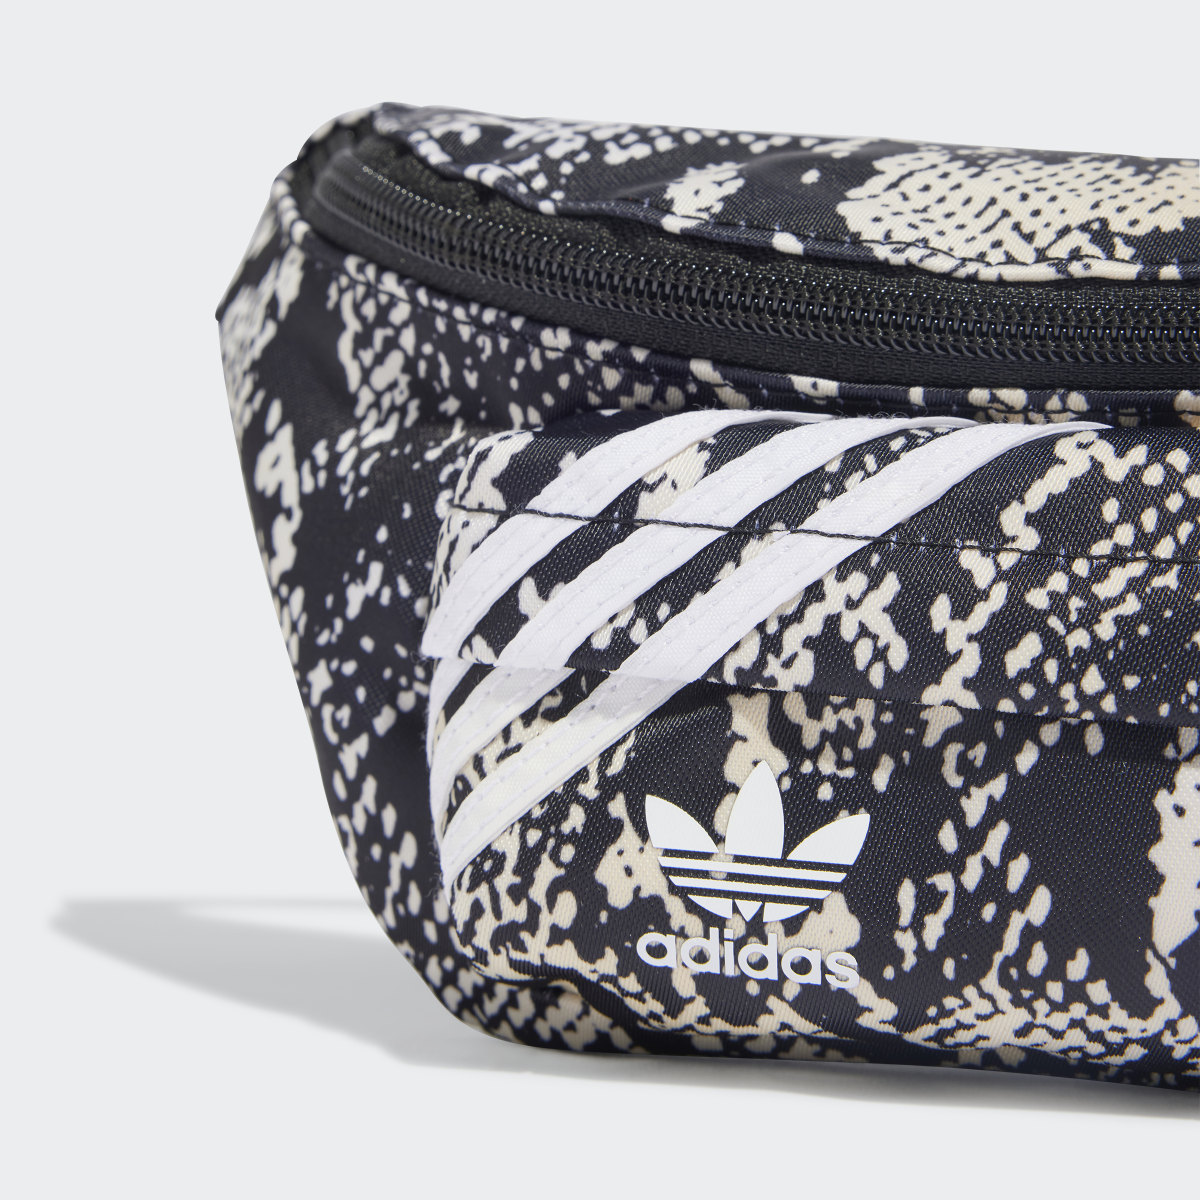 Adidas Snake Graphic Waist Bag. 7